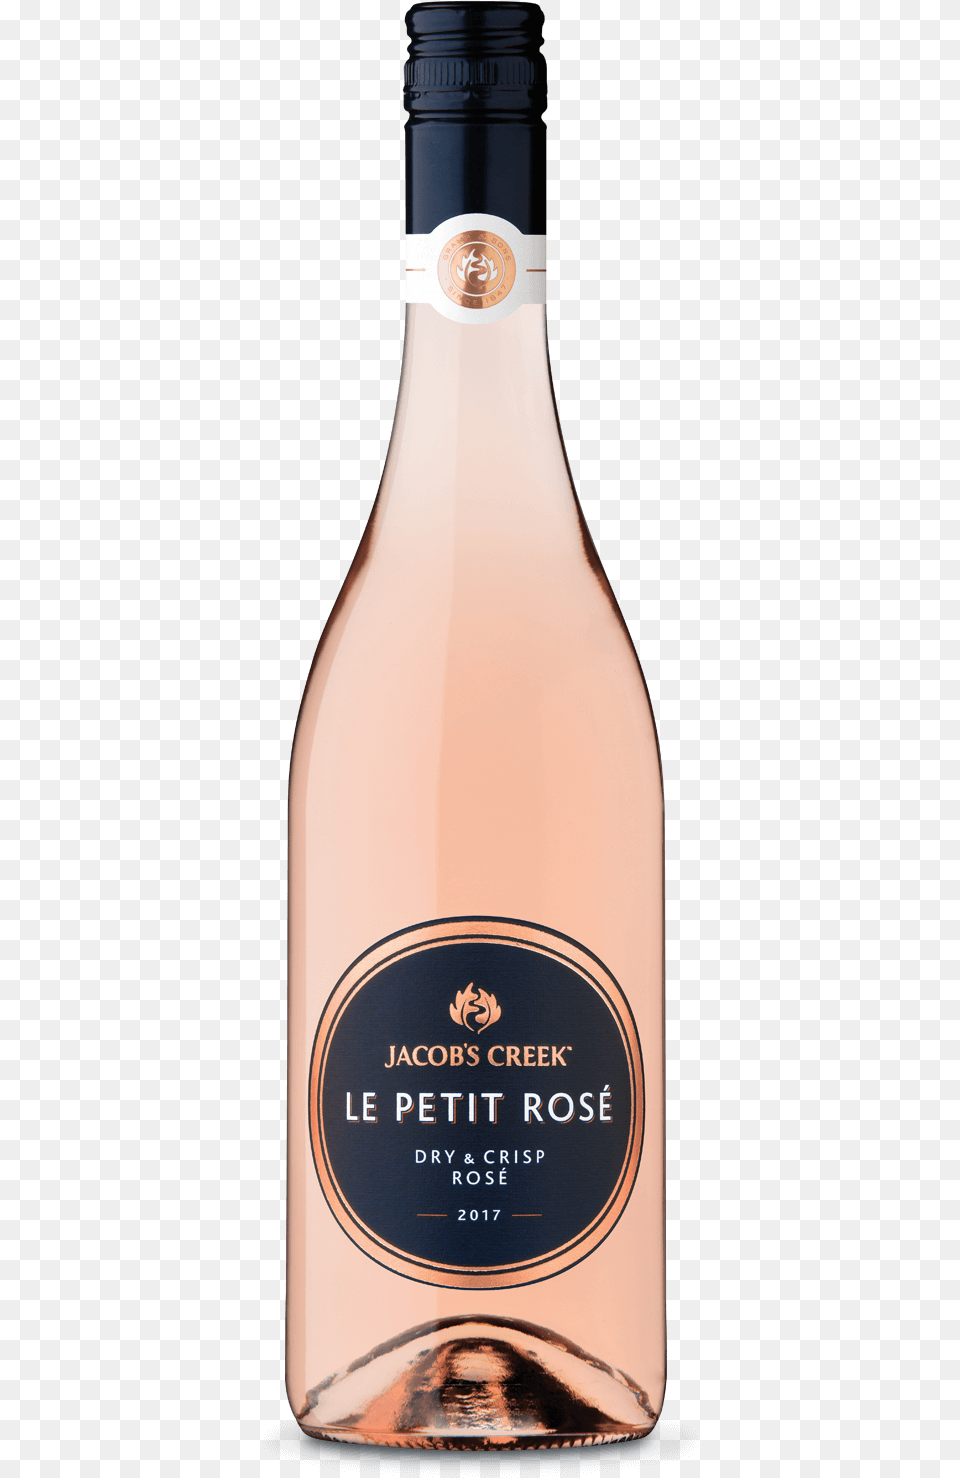 Le Petit Ros Bottle Le Petit Rose Jacobs Creek, Alcohol, Beverage, Liquor, Wine Free Transparent Png